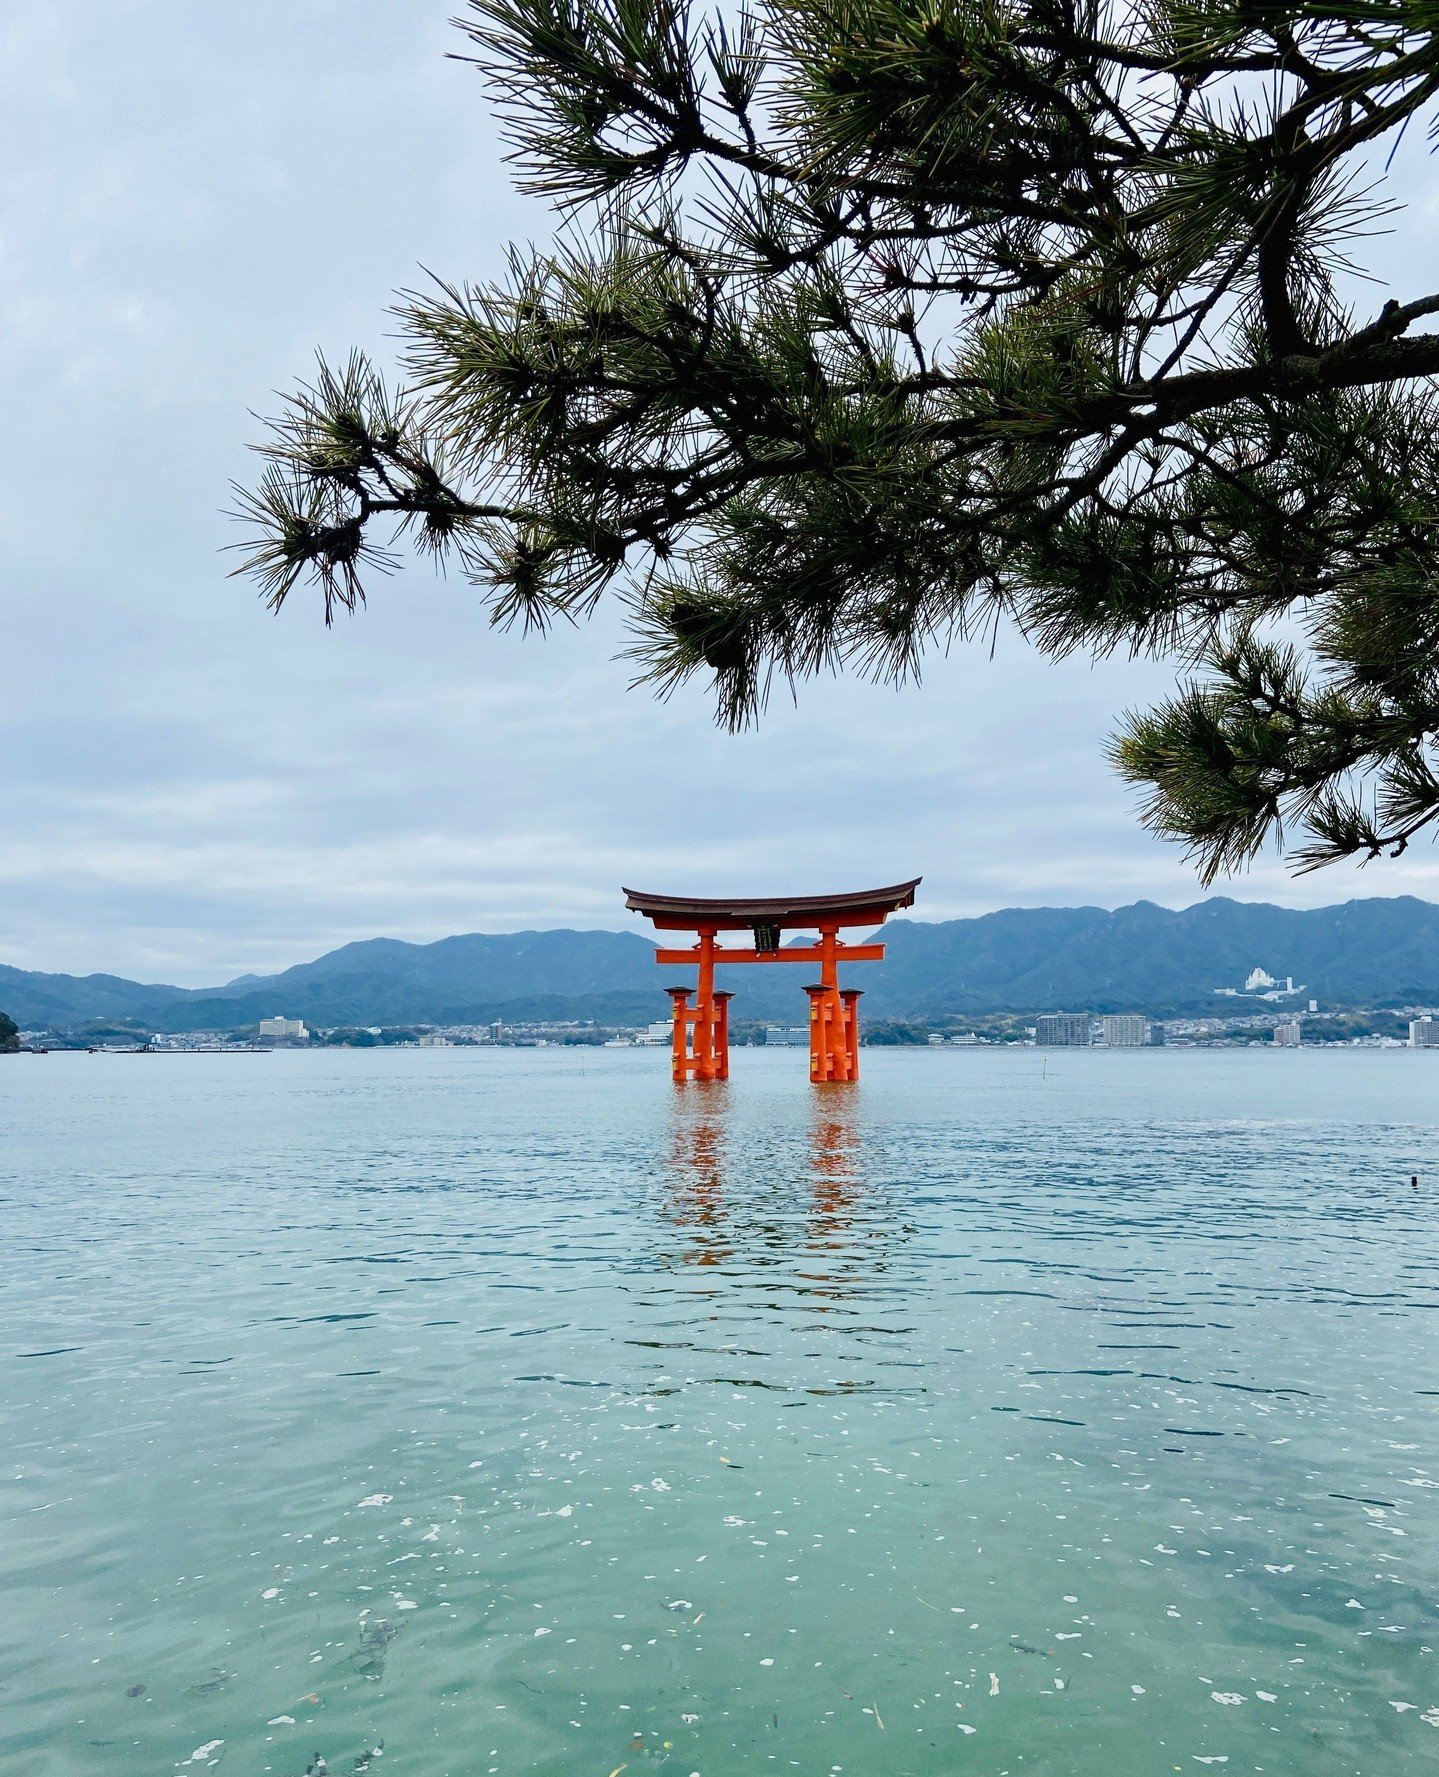 Miyajima ist die heilige Insel bei Hiroshima mit dem ber&uuml;hmten roten Schrein und Tor im Wasser ⛩️ hier liegen Shintoismus und Buddhismus dicht beeinander. Wie die vielen Omikuji- Zettel (Wahrsagungen) und Ema-Holztaffeln (F&uuml;rbitten). Und da